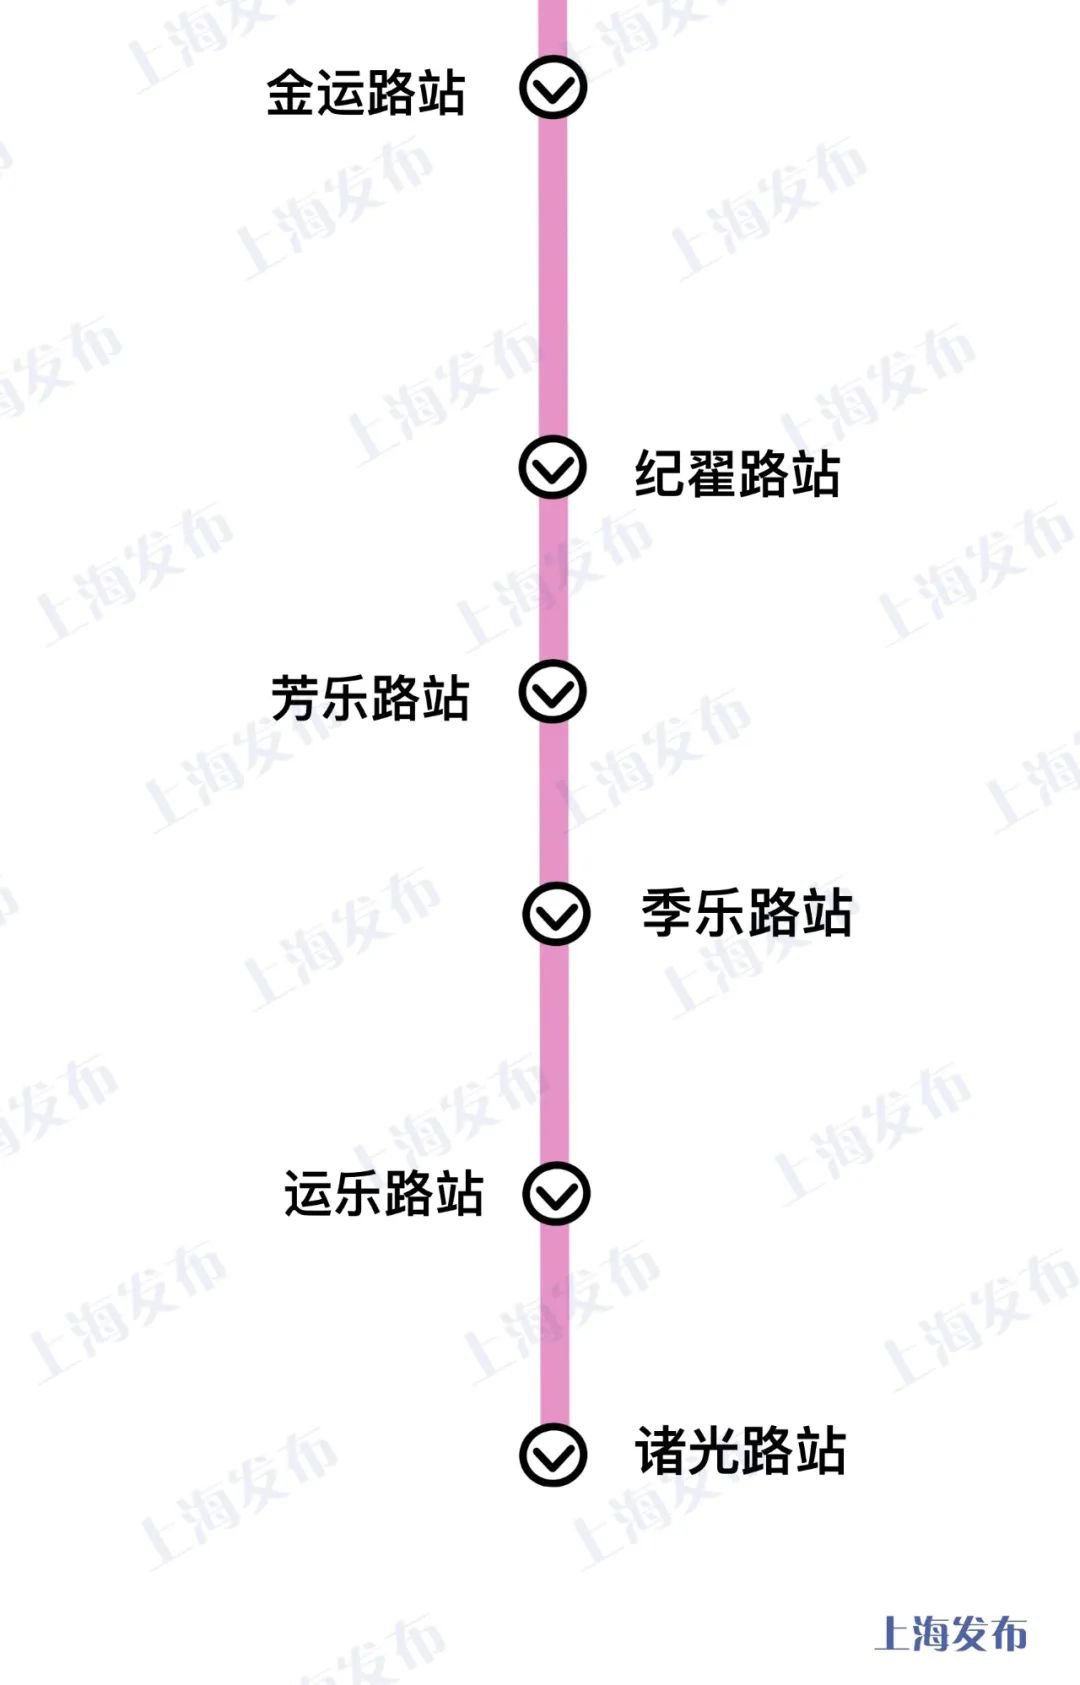 上海13号线西延伸线路图 站点名称